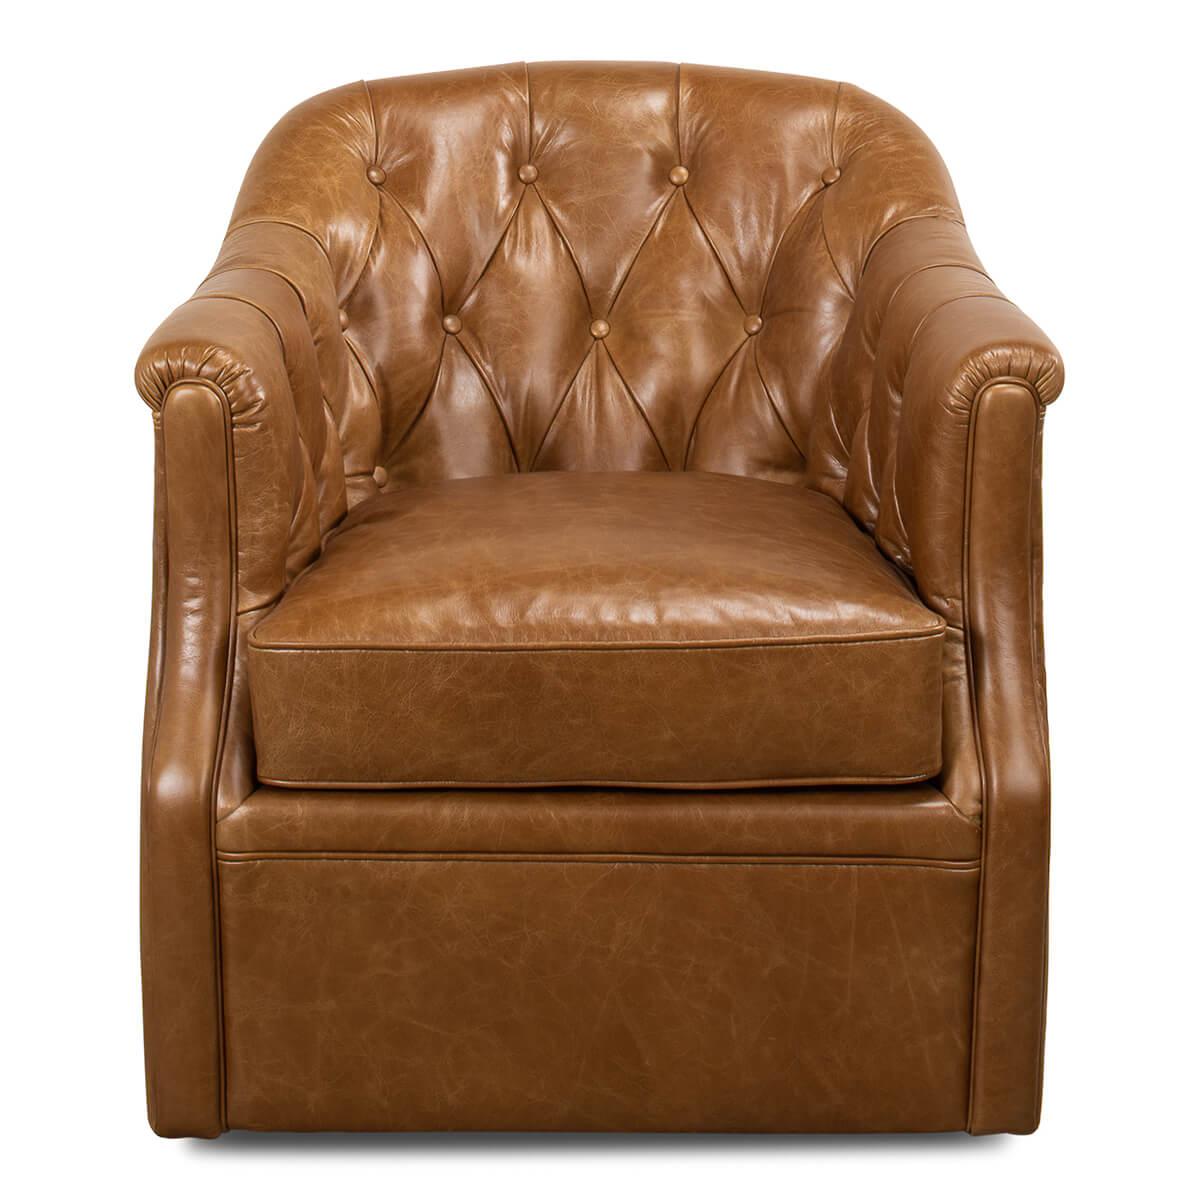 Klassischer ledergepolsterter Sessel mit Wannenrücken. Aus unserem braunen Leder Cuba mit getufteter Rückenlehne und gepolsterter Sitzfläche, auf einem drehbaren Fuß.

Abmessungen: 30